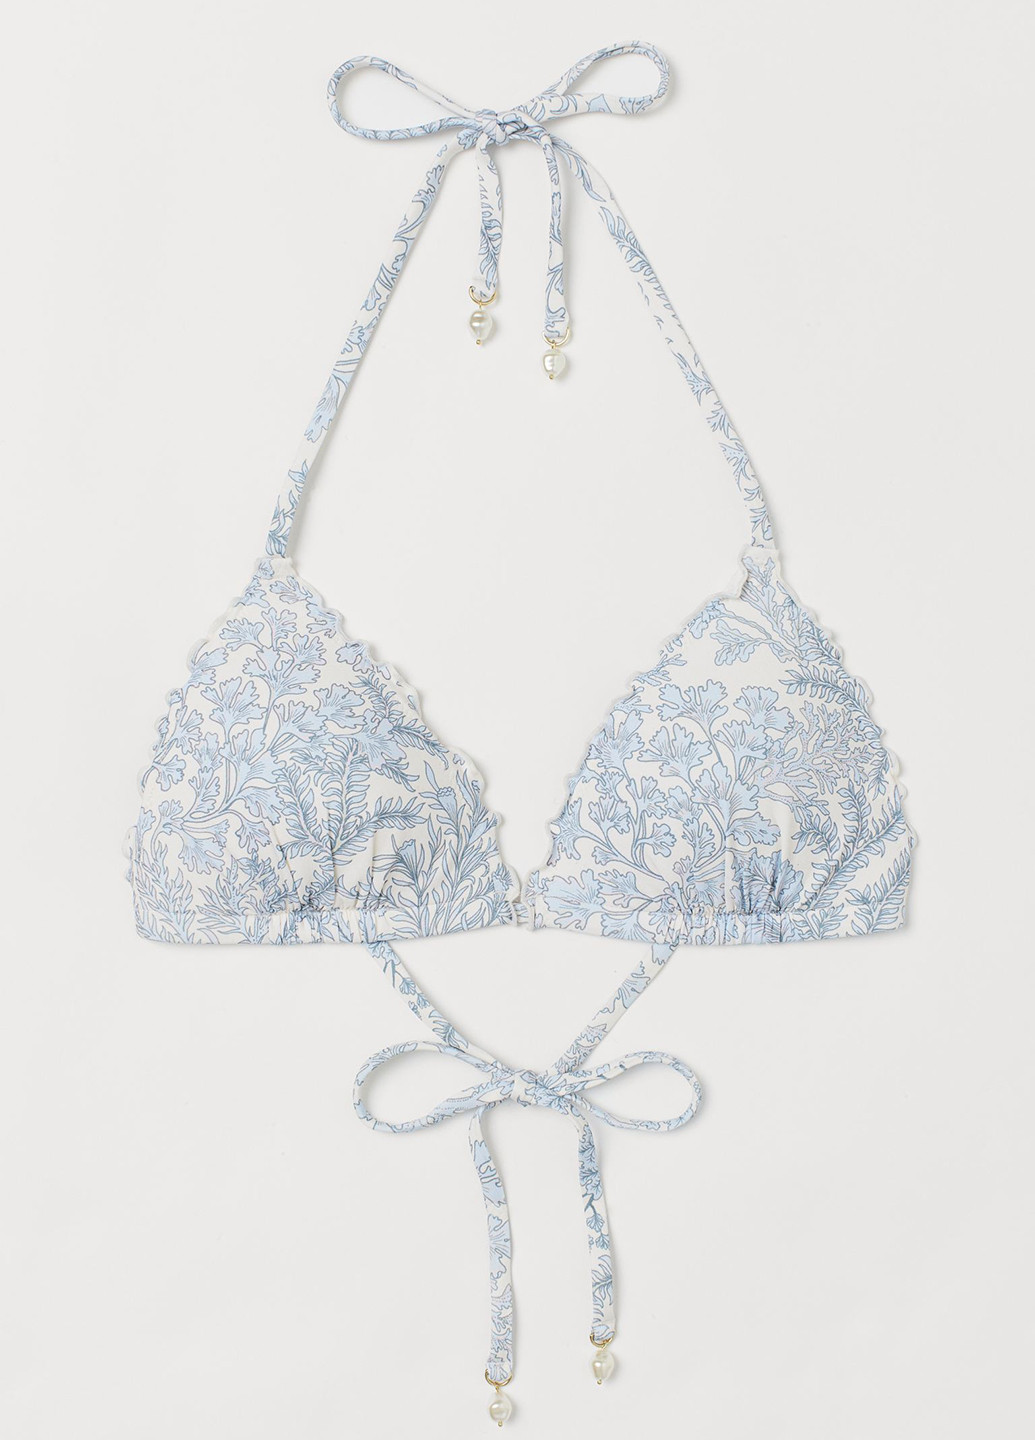 Купальный лиф H&M бикини цветочный белый пляжный трикотаж, полиамид